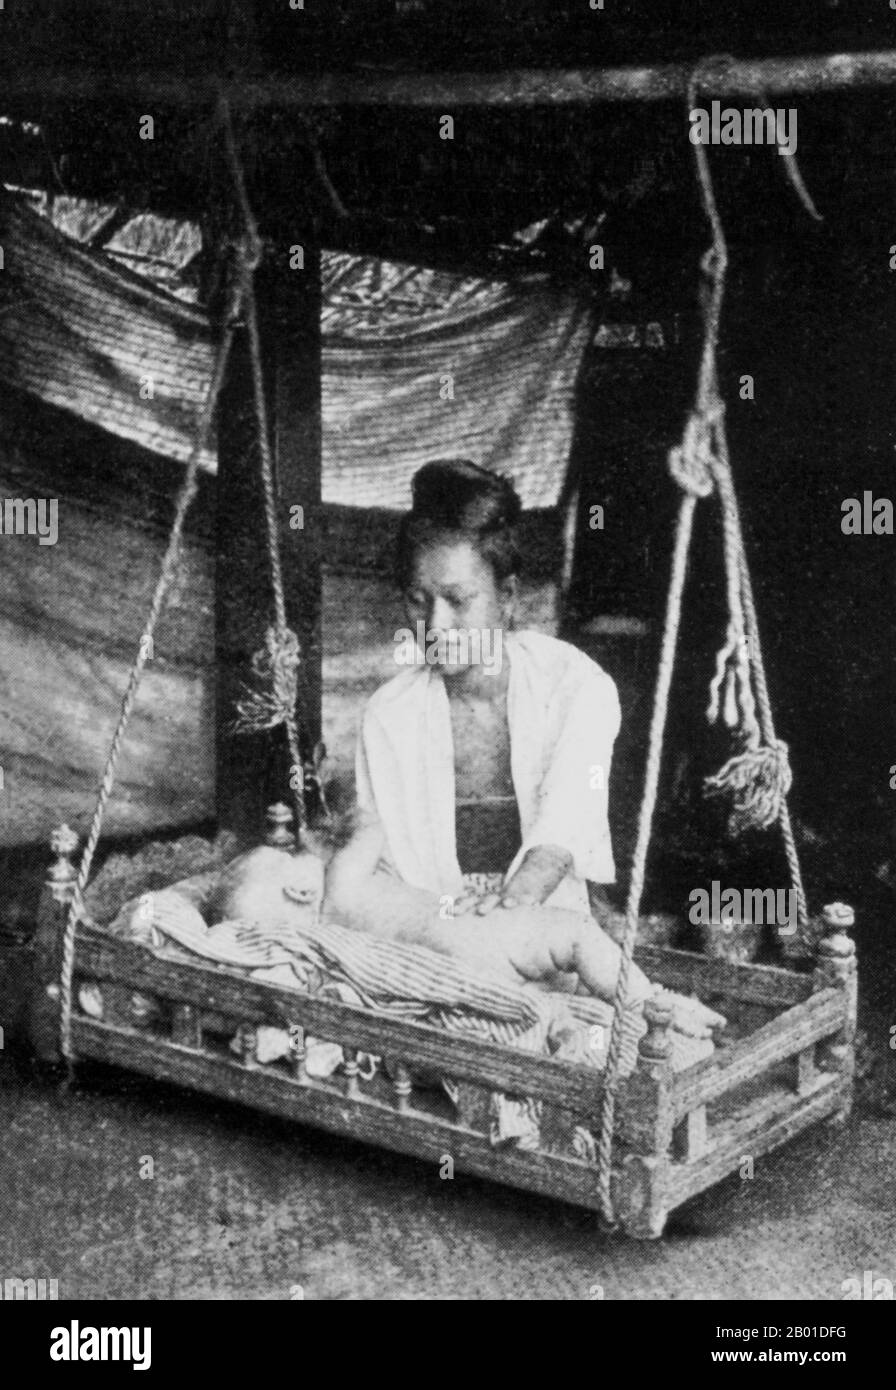 Birmania: Una madre birmana si prende cura di suo figlio che si trova in una culla di legno oscillante (birmano: 'saungban'), c. 1892-1896. La conquista britannica della Birmania è iniziata nel 1824 in risposta ad un tentativo birmano di invadere l'India. Nel 1886, e dopo altre due guerre, la Gran Bretagna aveva incorporato l'intero paese nel Raj britannico. Per stimolare il commercio e facilitare i cambiamenti, gli inglesi hanno introdotto indiani e cinesi, che hanno rapidamente spostato i birmani nelle aree urbane. A oggi Rangoon e Mandalay hanno grandi popolazioni etniche indiane. Sono state costruite ferrovie e scuole, così come un gran numero di carceri. Foto Stock